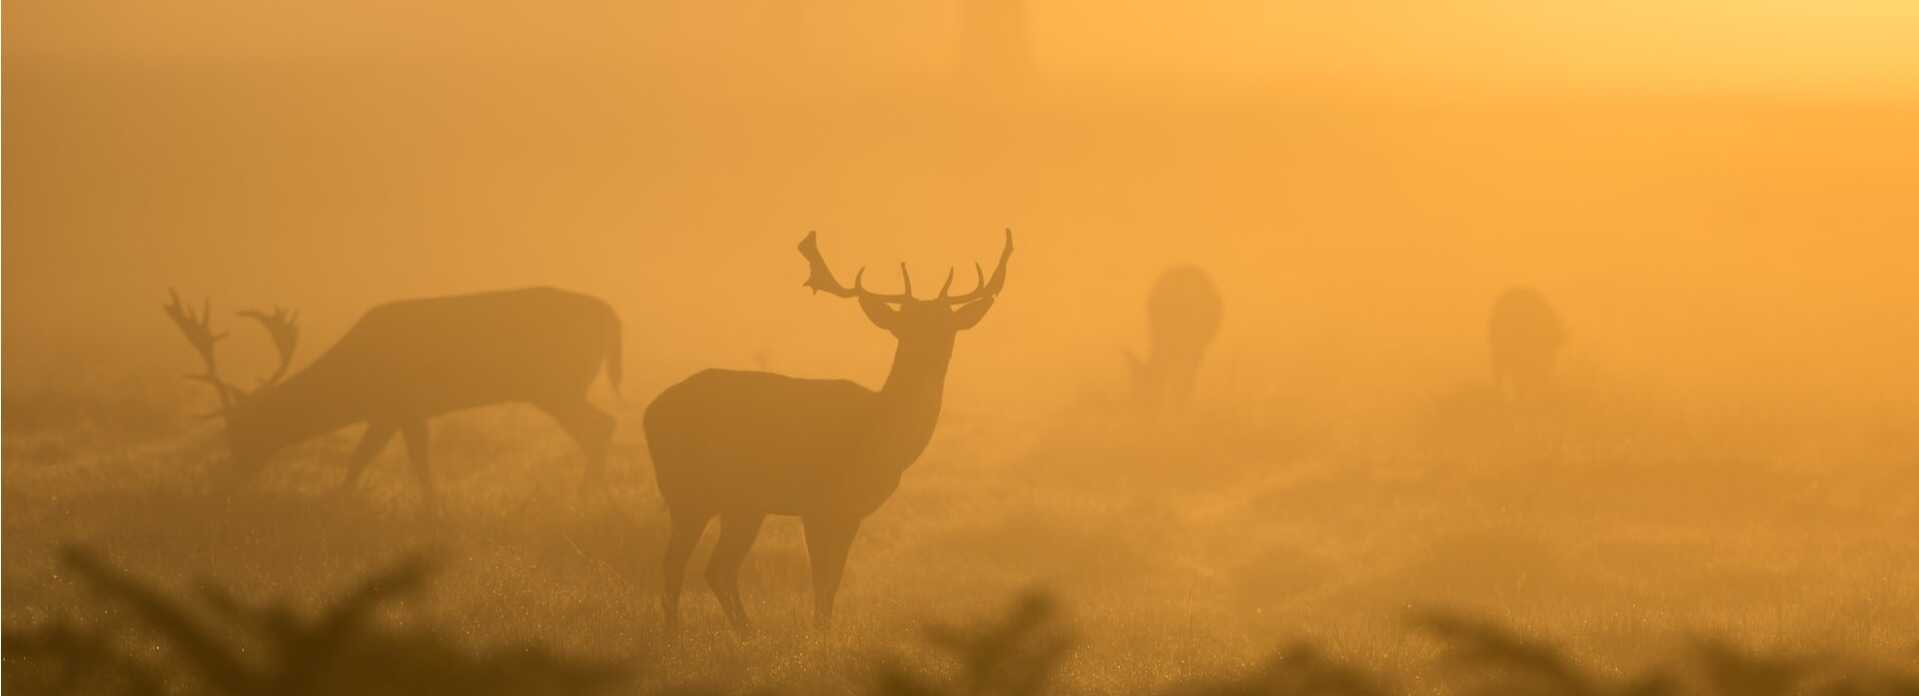 jeleni v mlžném oparu